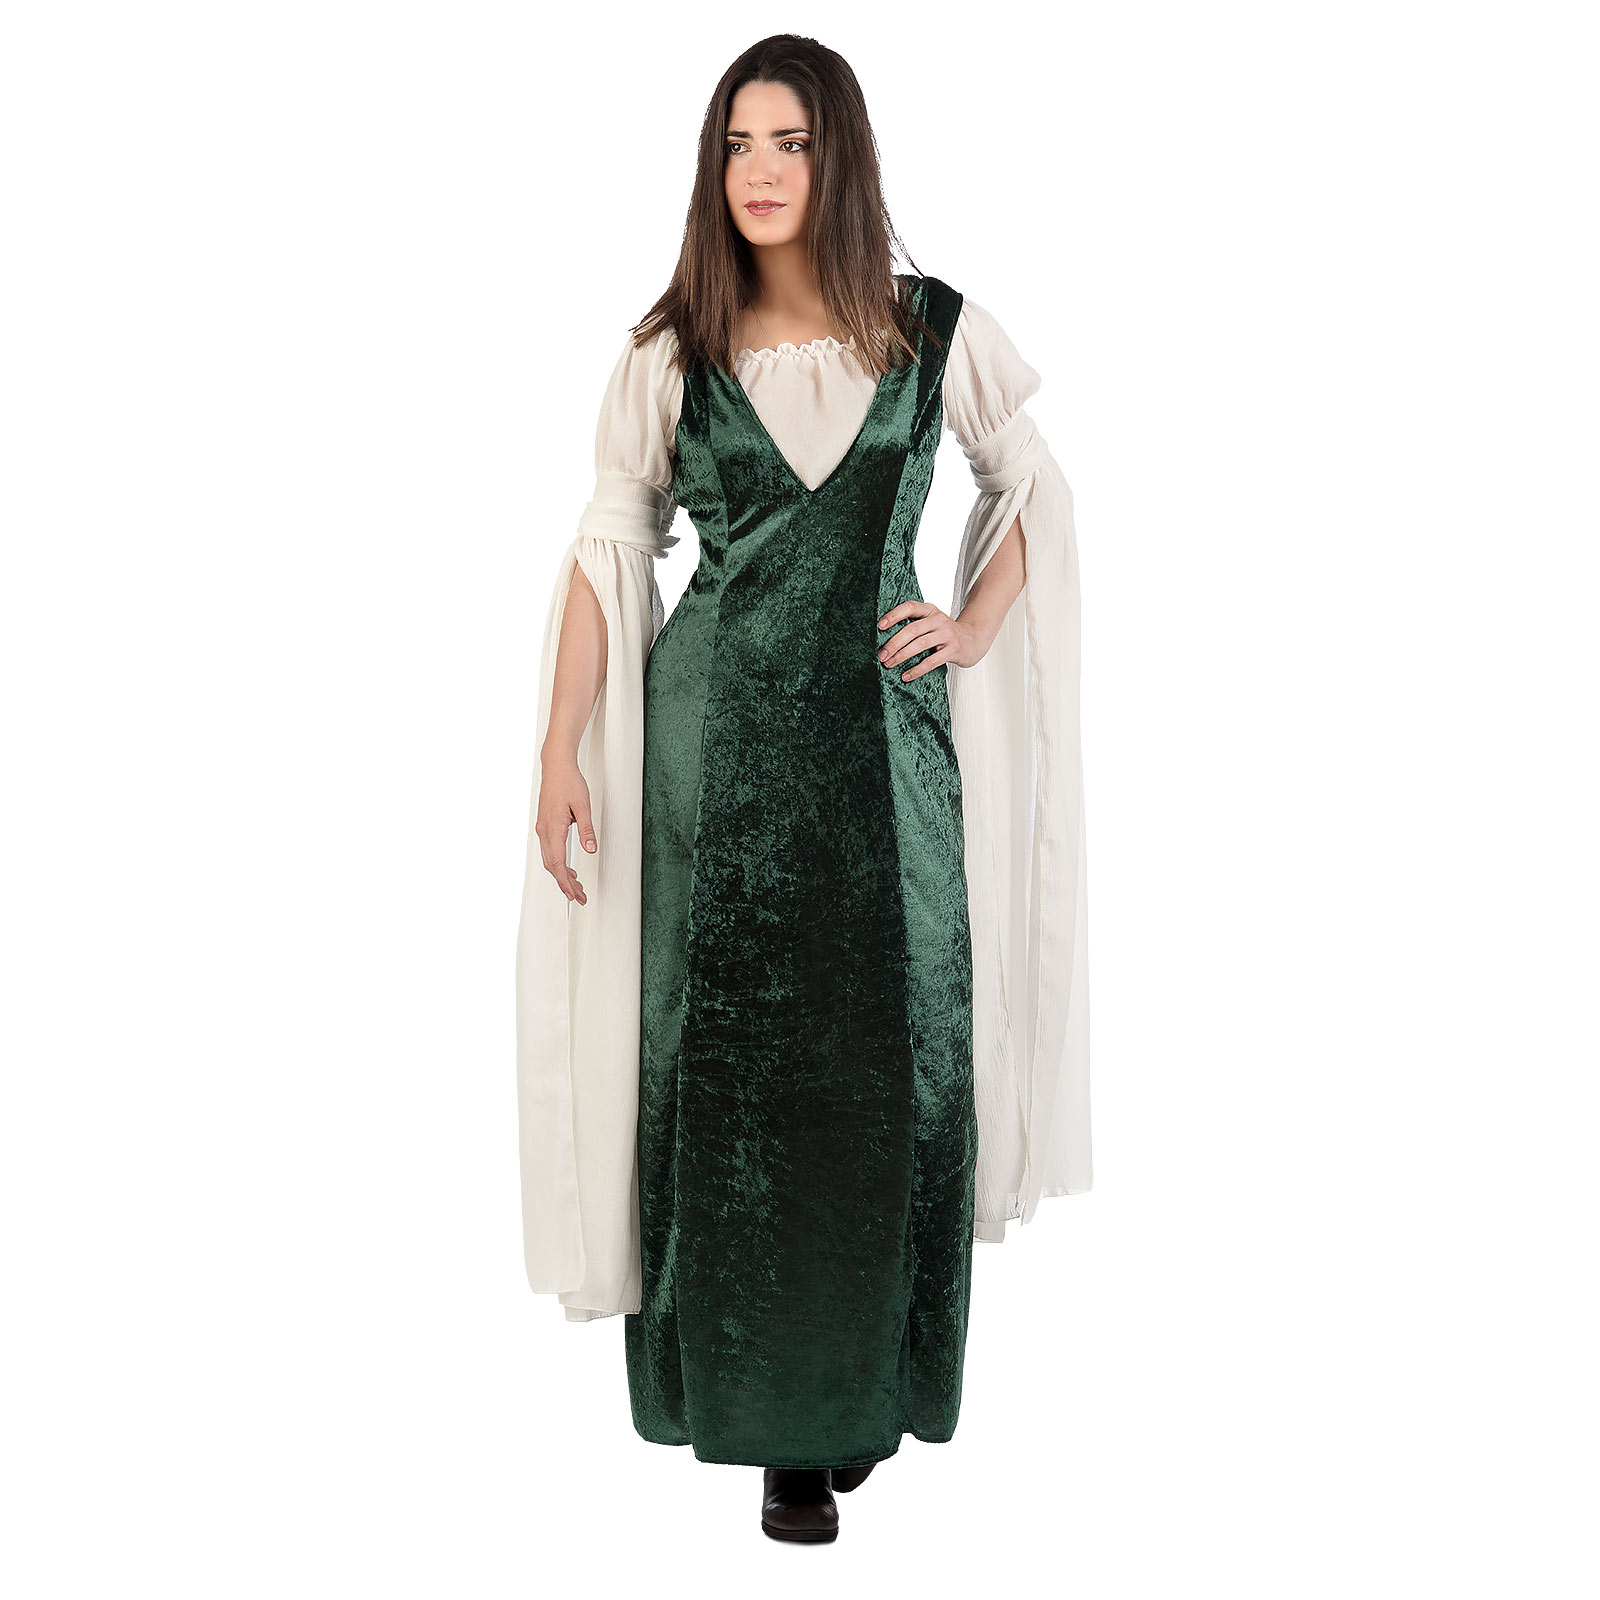 Medieval velvet dress costume ladies green